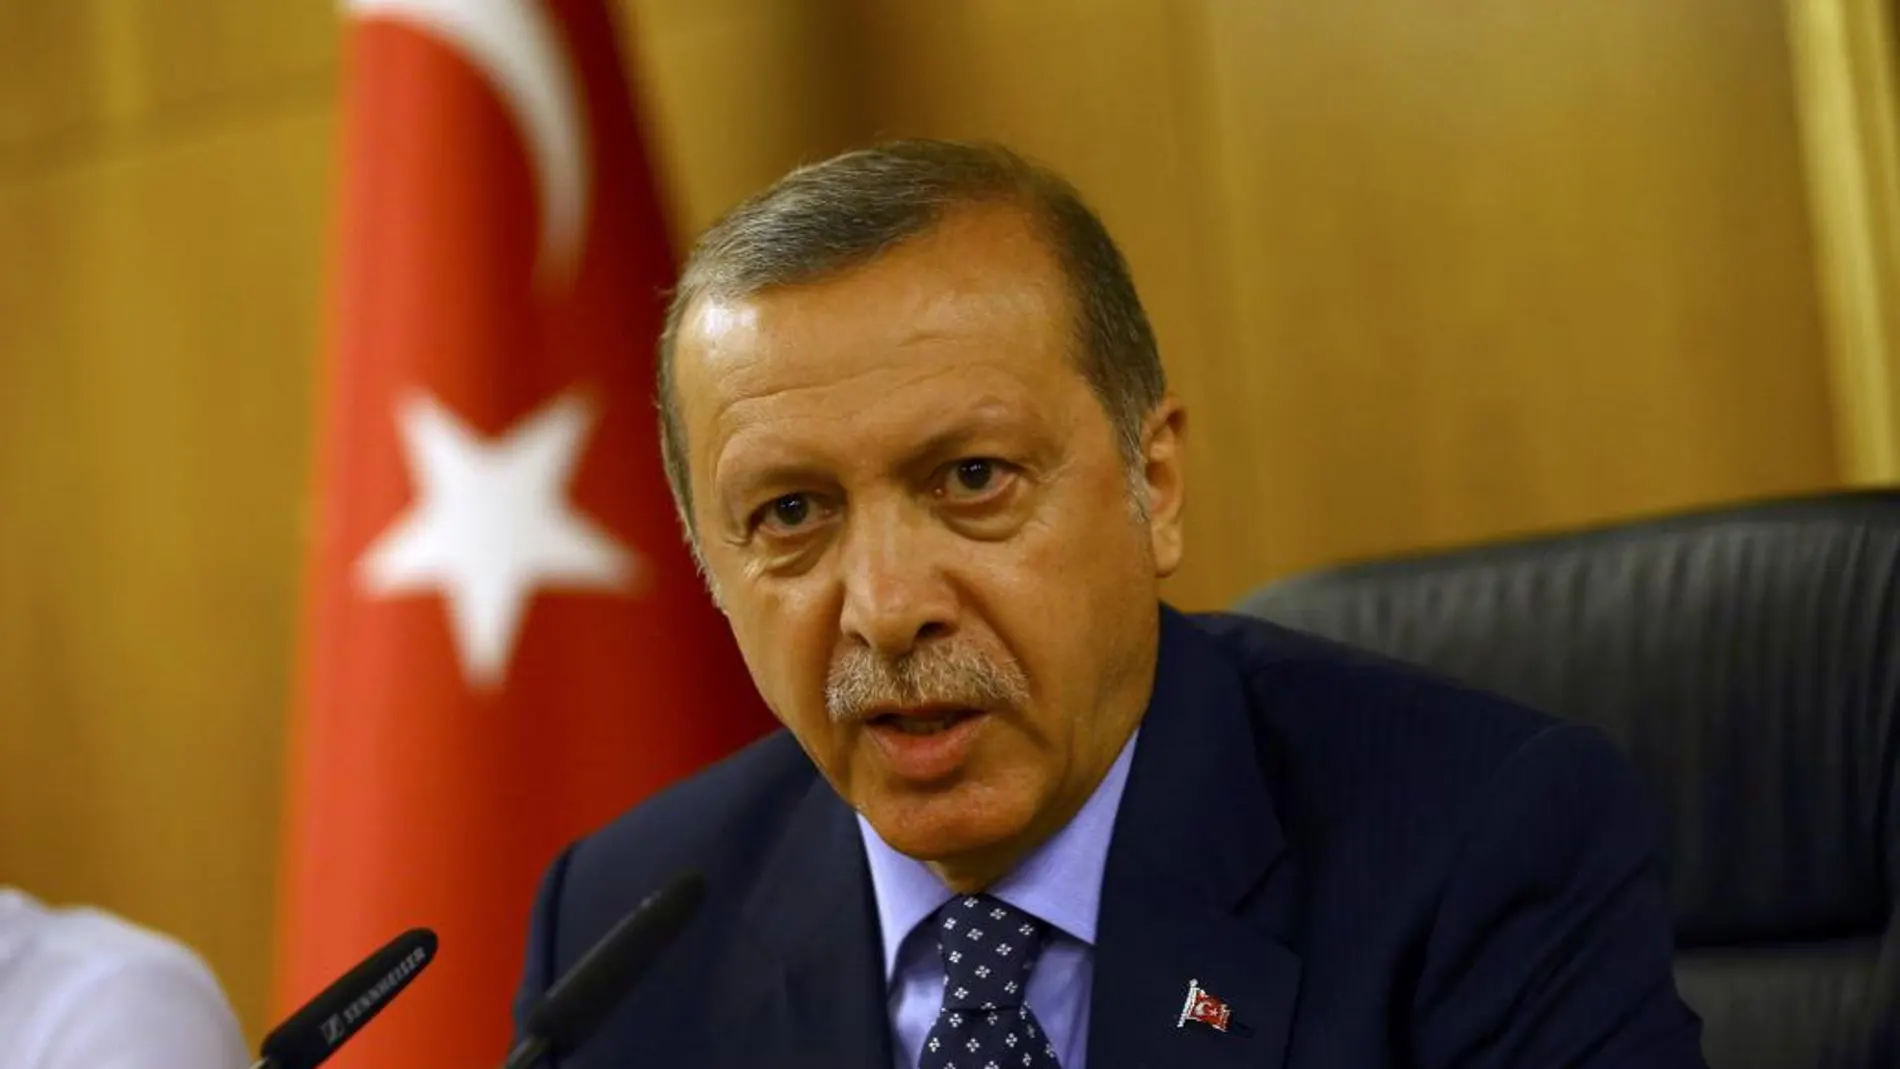 El presidente de Turquía Tayyip Erdogan, durante su comparecencia en su ligar de vacaciones, cuando se ha producido el intento de golpe de estado